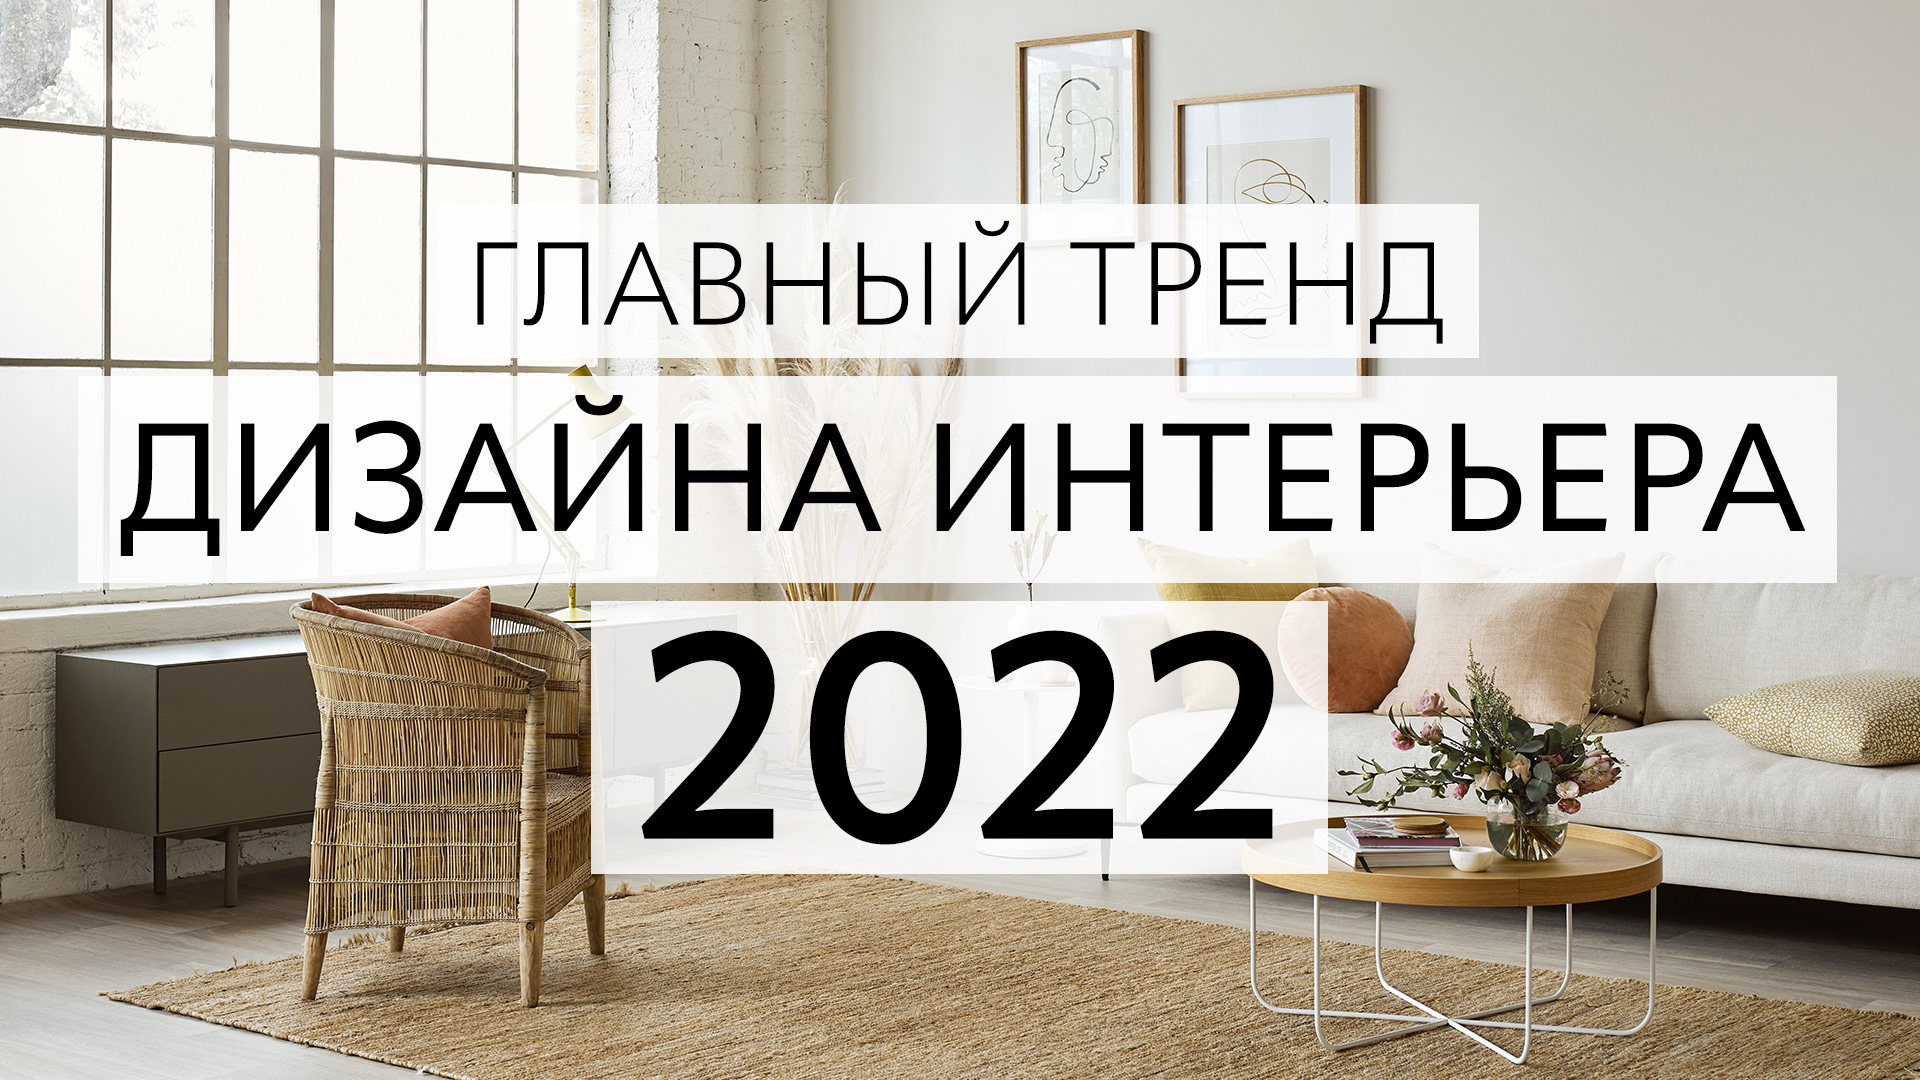 Главный тренд 2022 в дизайне интерьера. Теплый минимализм